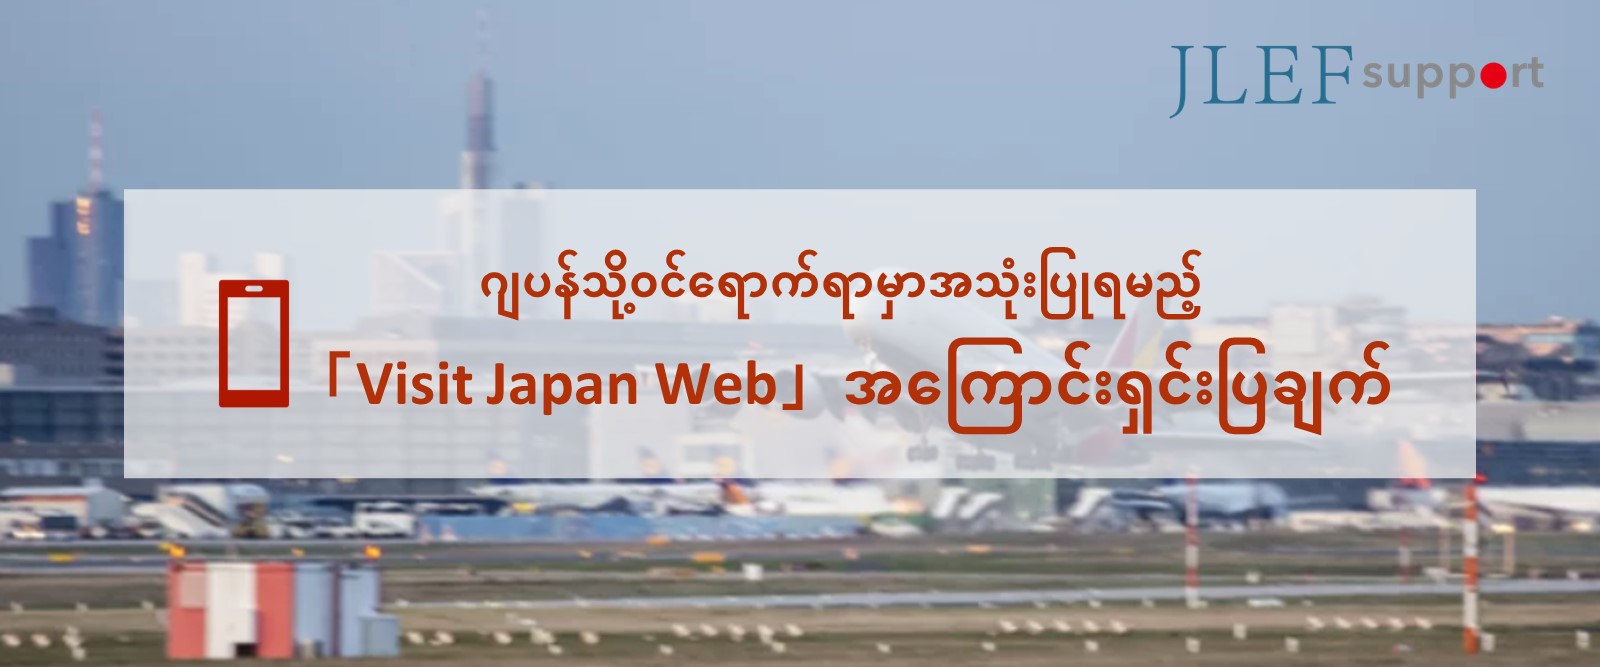 ဂျပန်သို့ဝင်ရောက်ရာမှာအသုံးပြုရမည့်「Visit Japan Web」ဆိုသည်မှာ